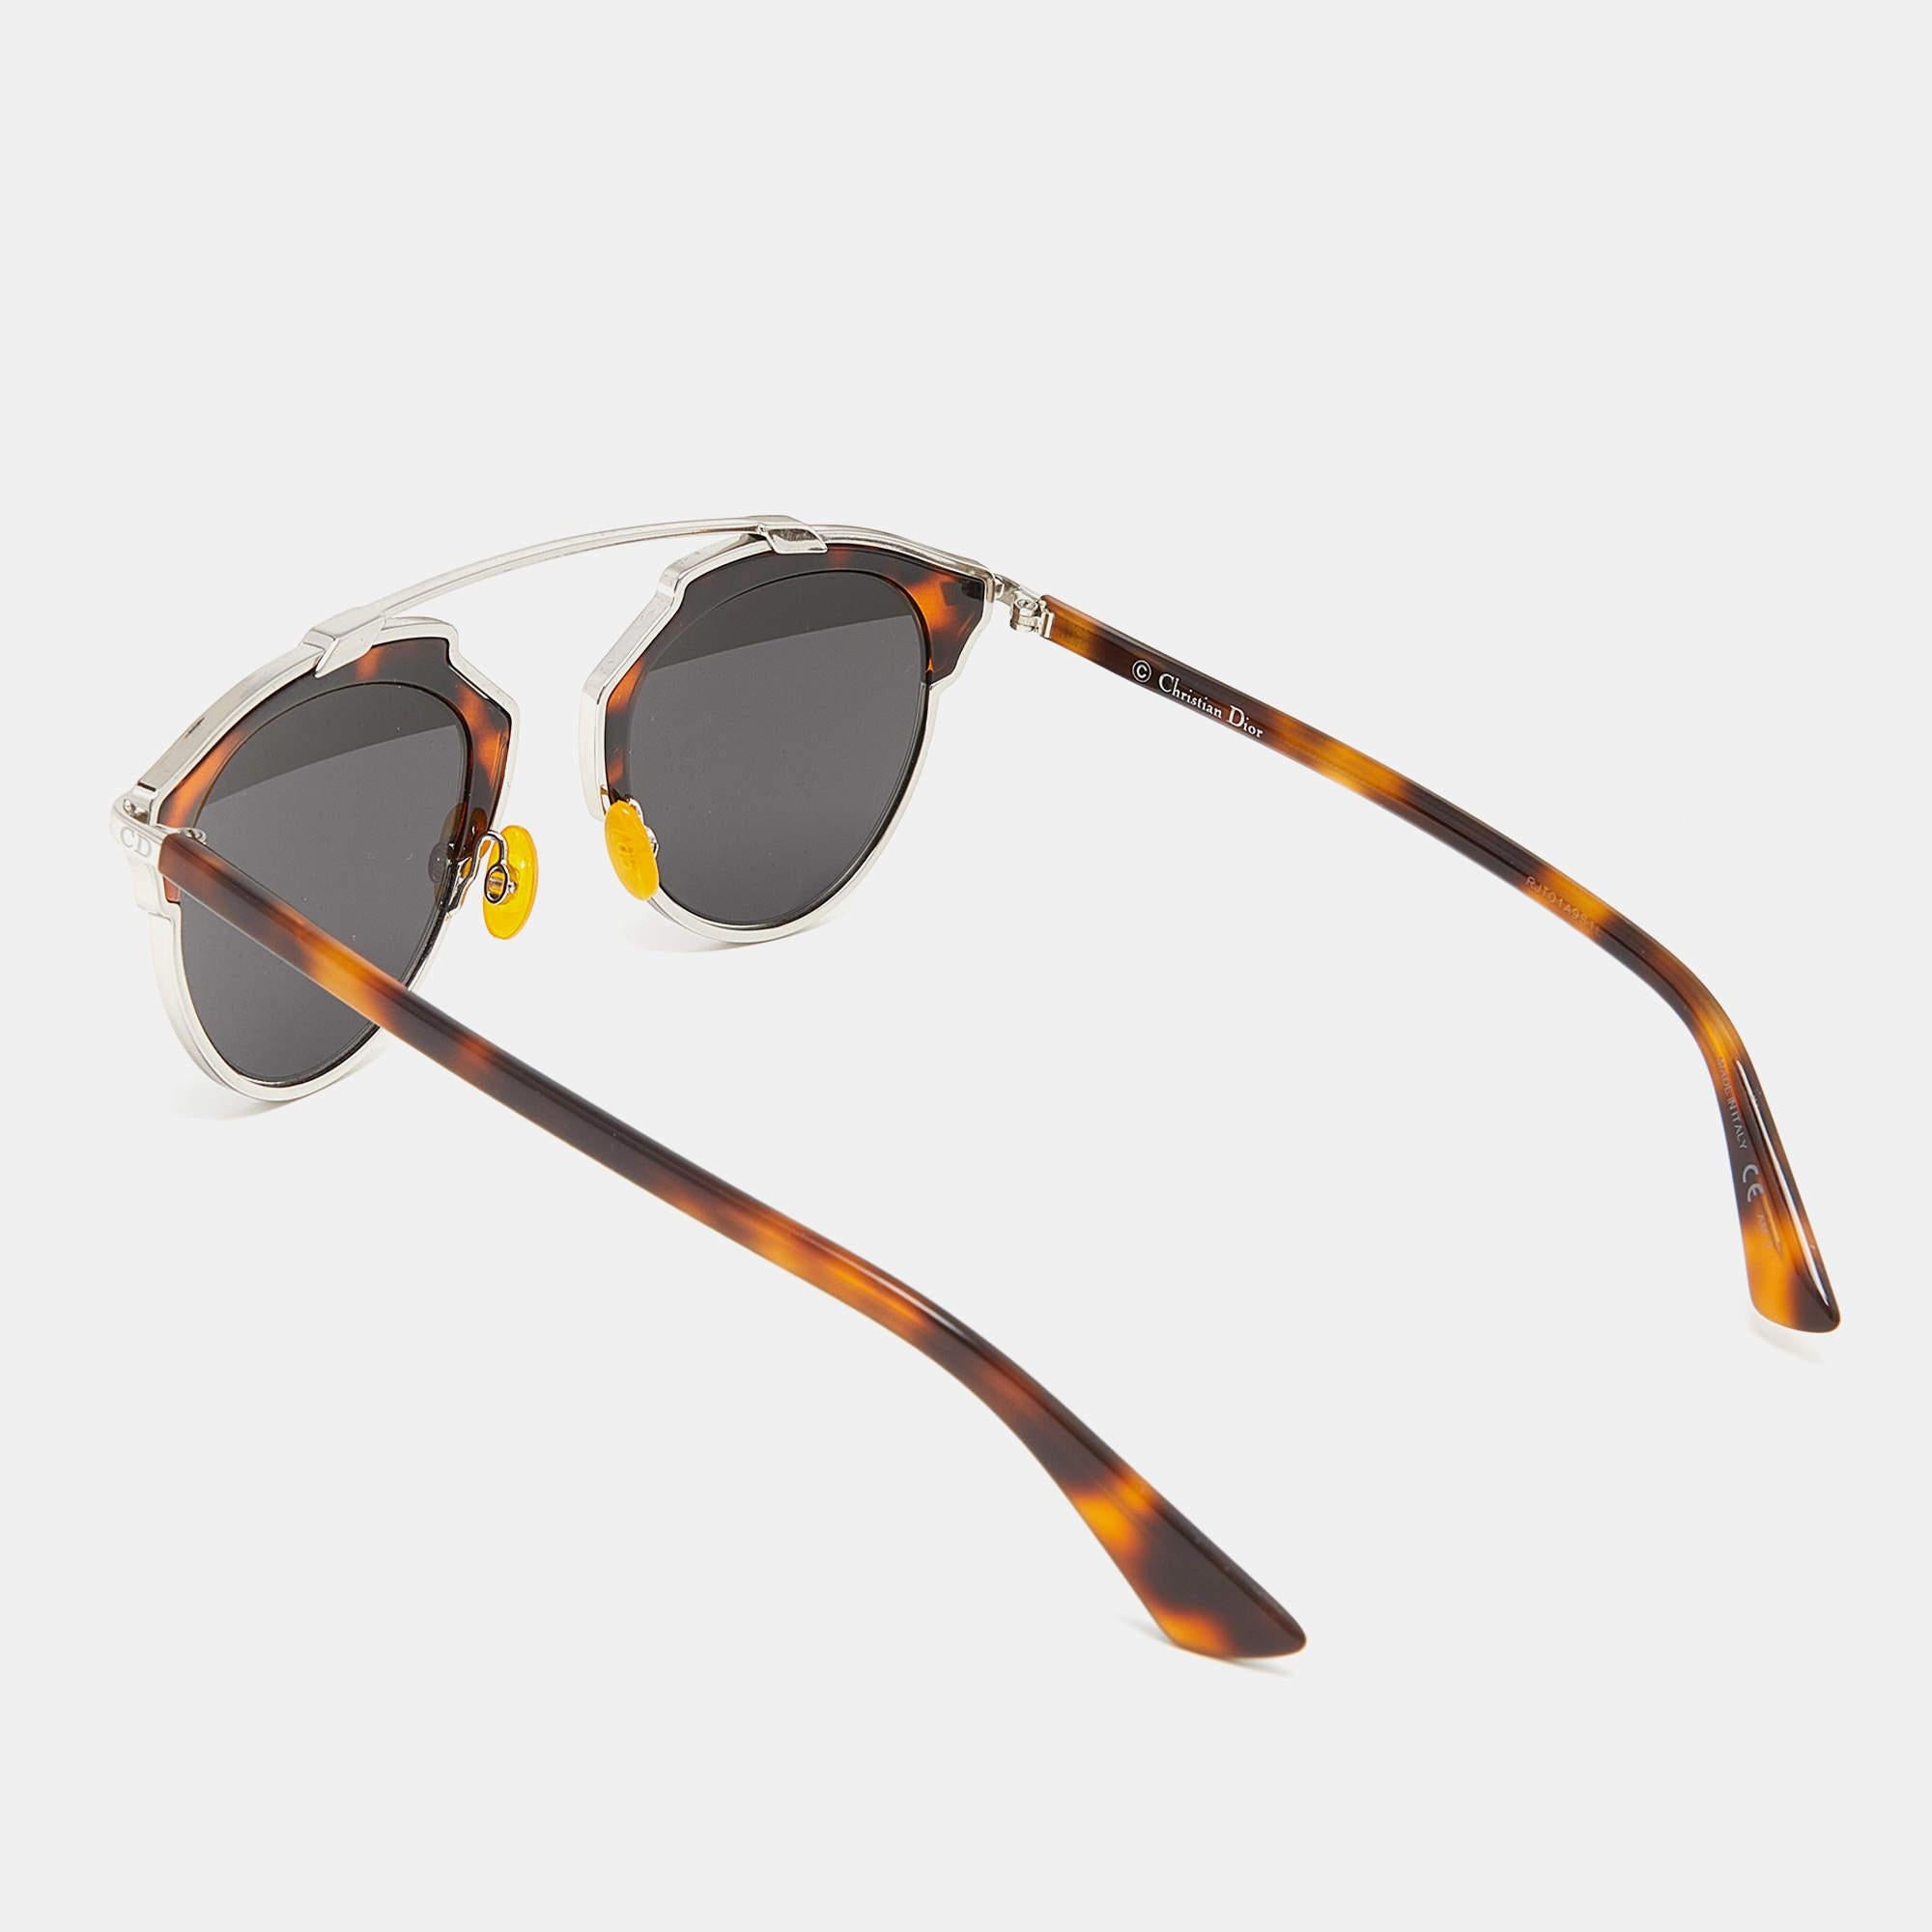 Der elegante Rahmen und die hochwertigen Gläser machen diese Sonnenbrille zu einem modischen Accessoire, das man einfach haben muss. Das von Dior entworfene Paar passt am besten zu Ihren auffälligen Outfits.

Enthält
Echtheitskarte, Original-Box,